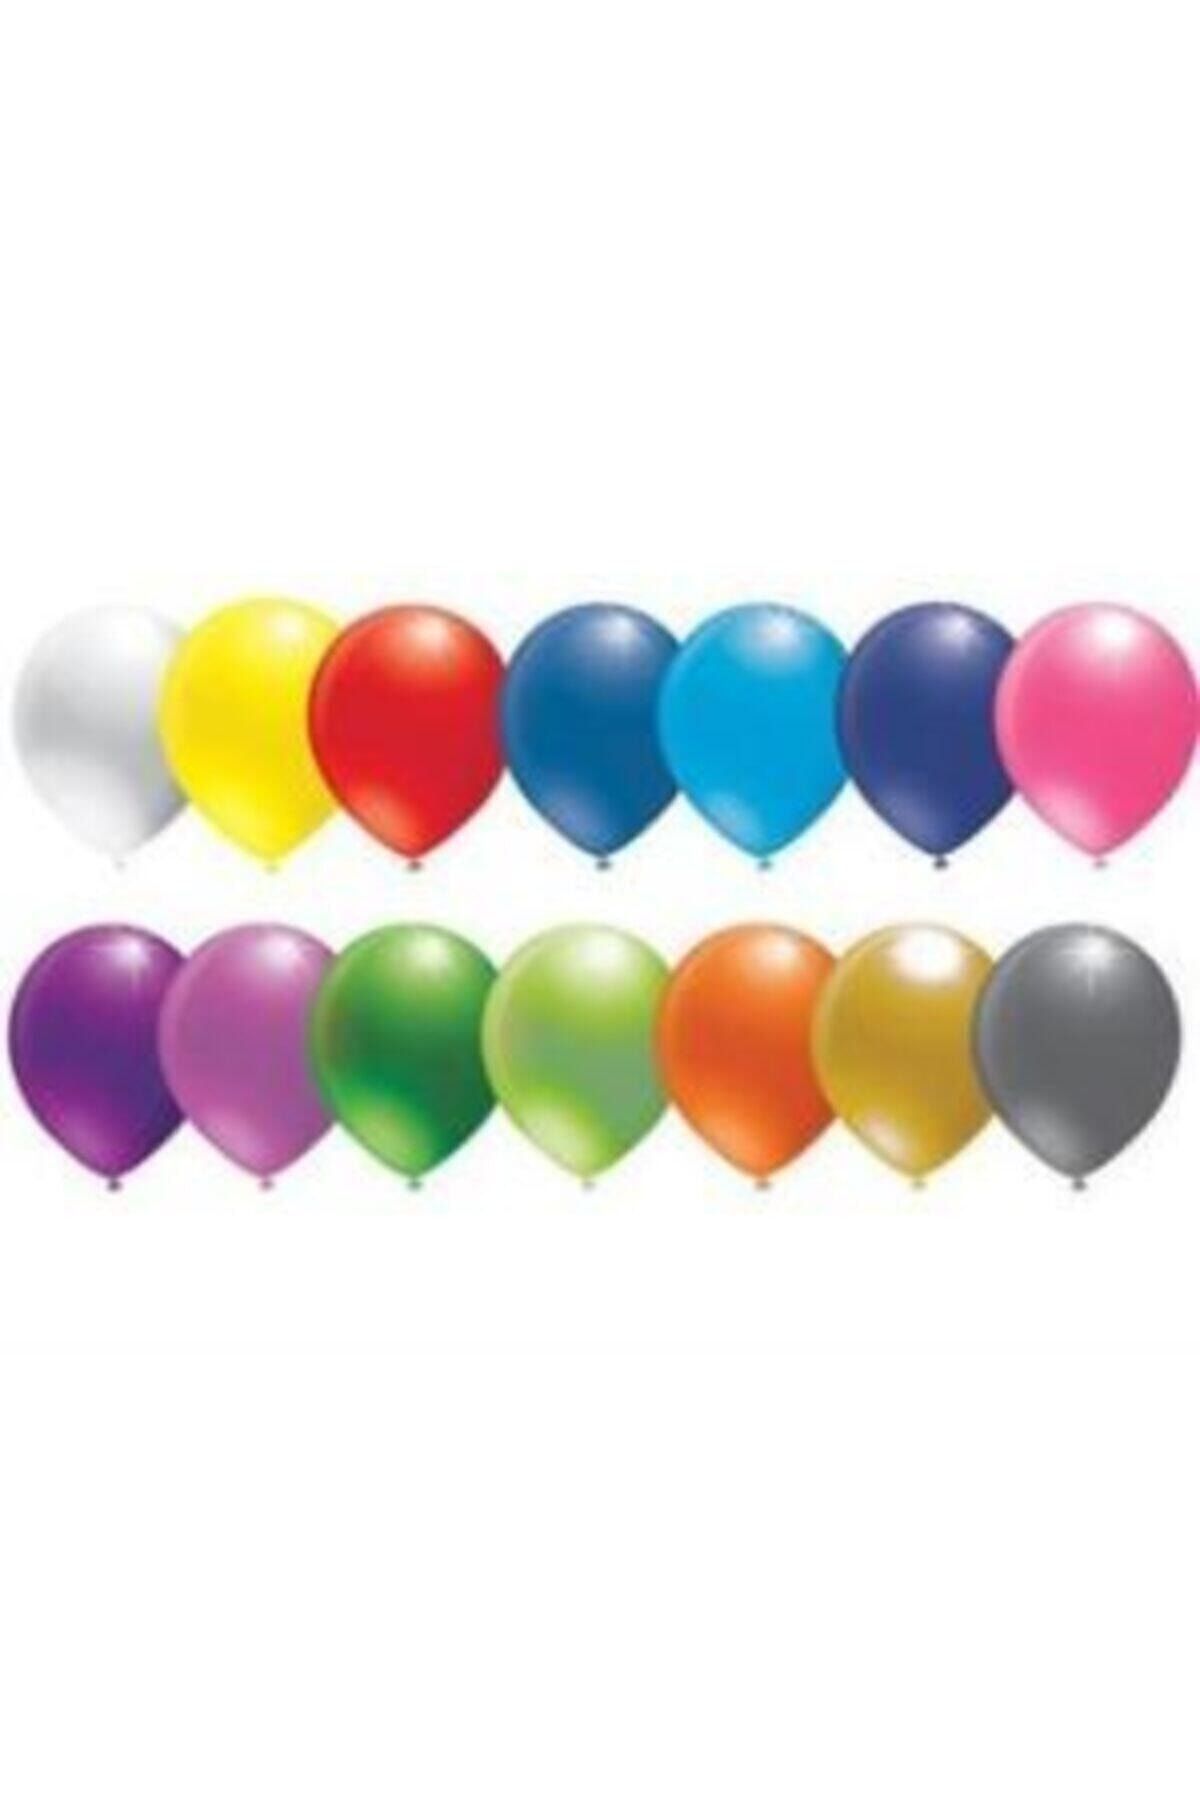 Party Balon 10 Inc Baskısız Karışık Pastel Renk 100 Adet